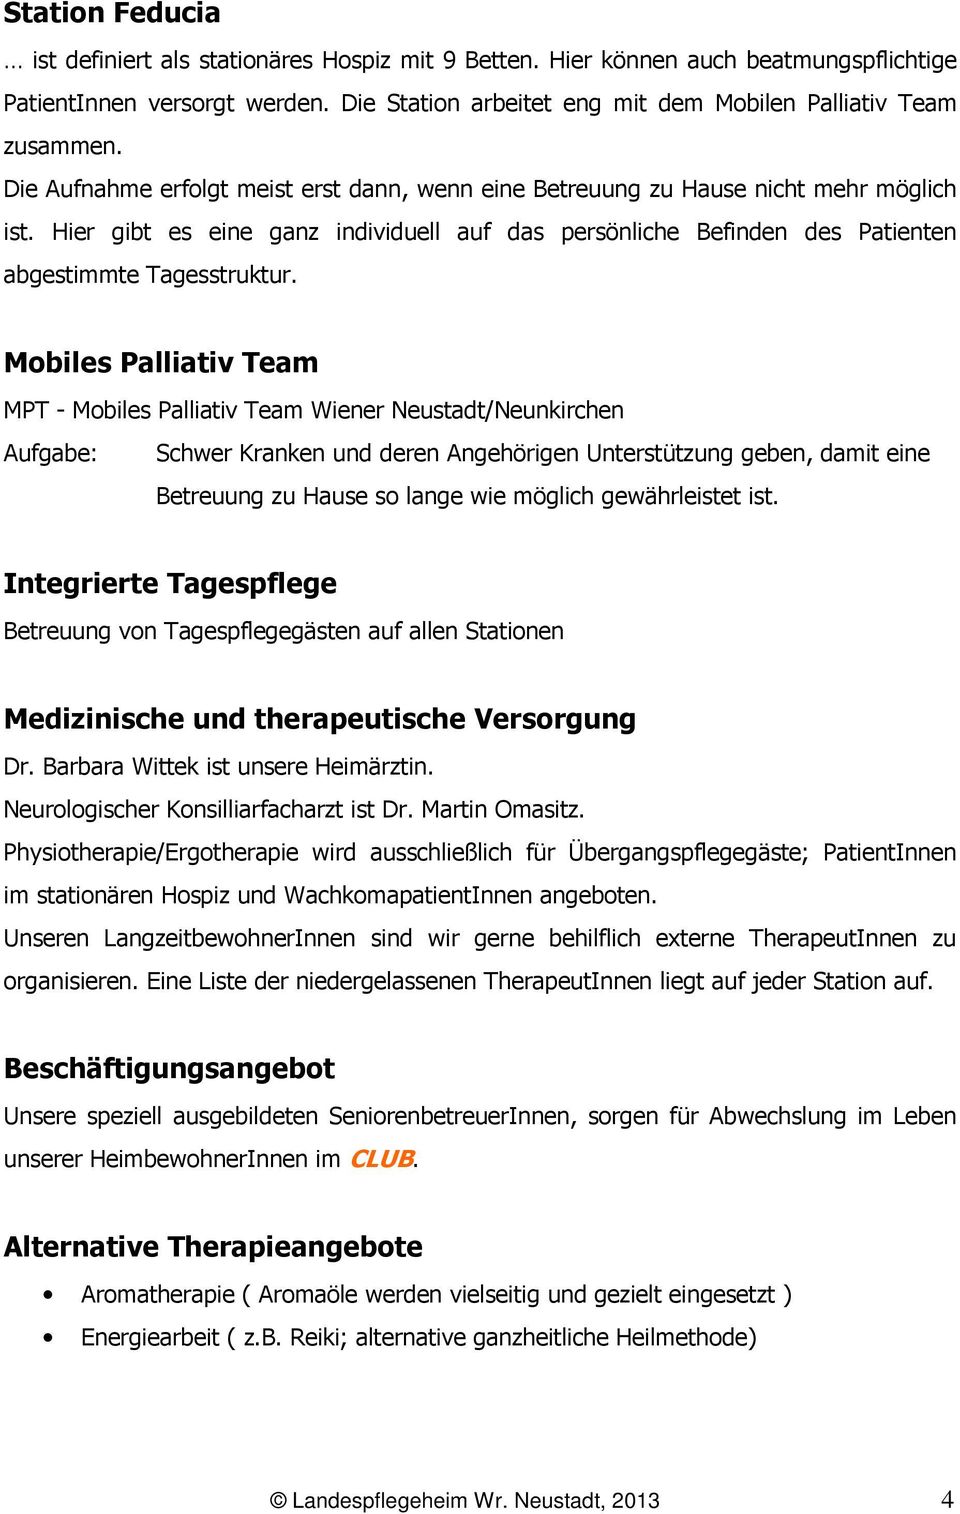 Mobiles Palliativ Team MPT - Mobiles Palliativ Team Wiener Neustadt/Neunkirchen Aufgabe: Schwer Kranken und deren Angehörigen Unterstützung geben, damit eine Betreuung zu Hause so lange wie möglich